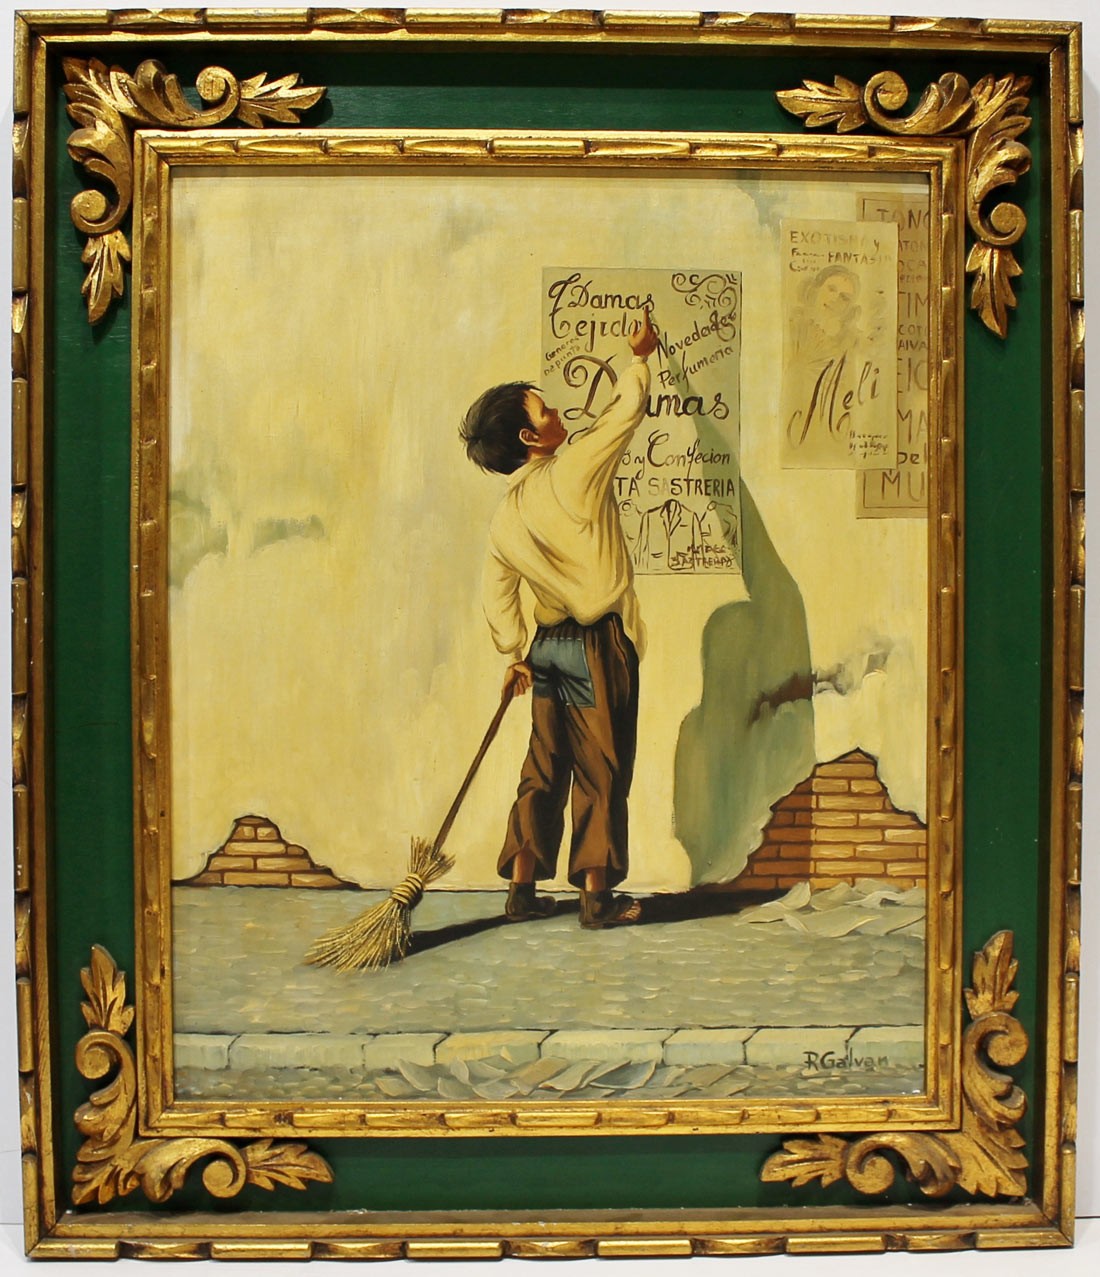 R. Galván: Boy with broom